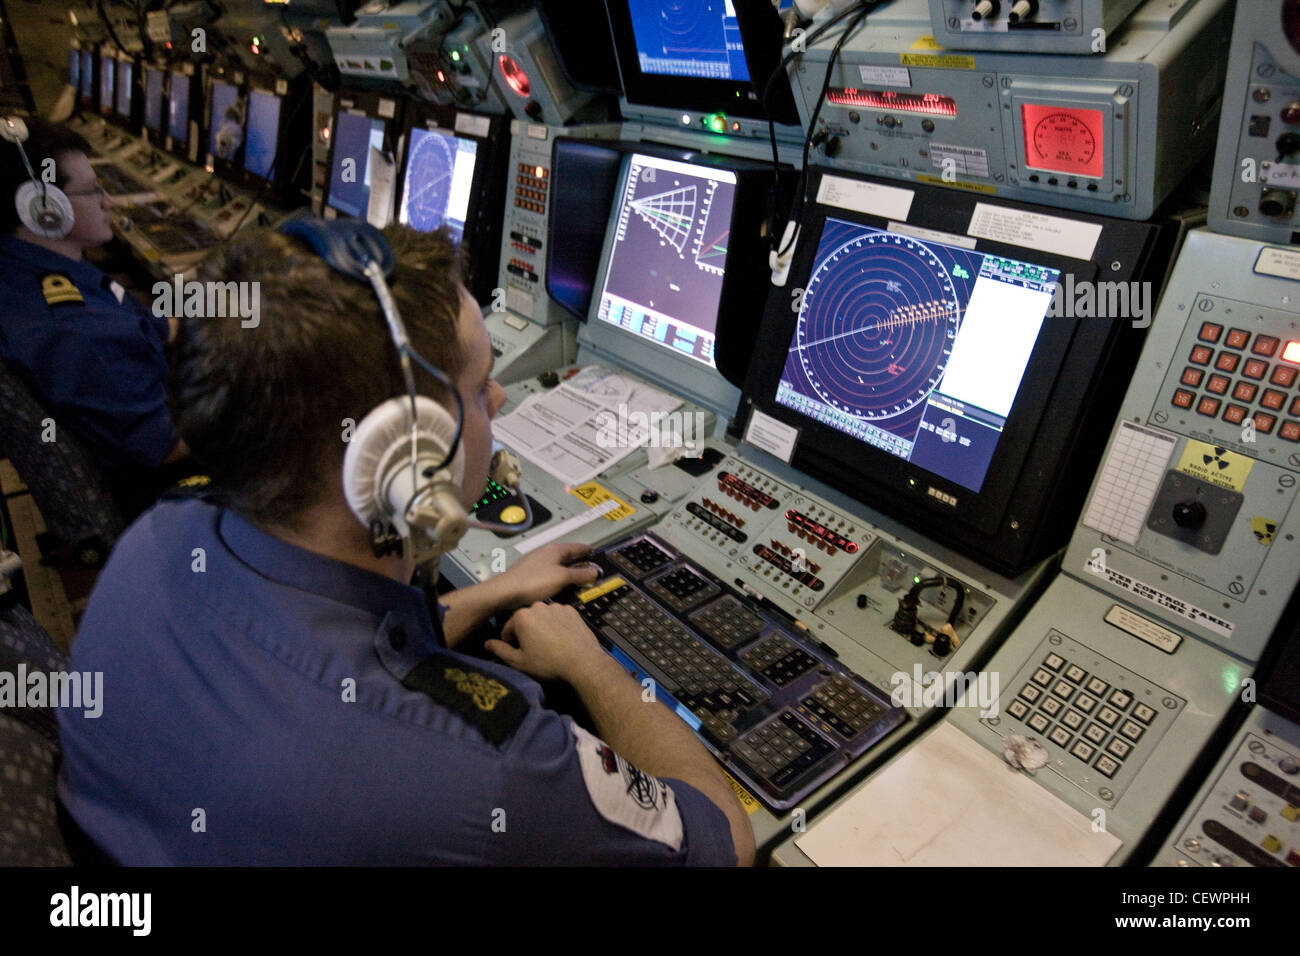 L'observation de l'équipage sur les radars de navigation porte-avions HMS Illustrius naval Banque D'Images